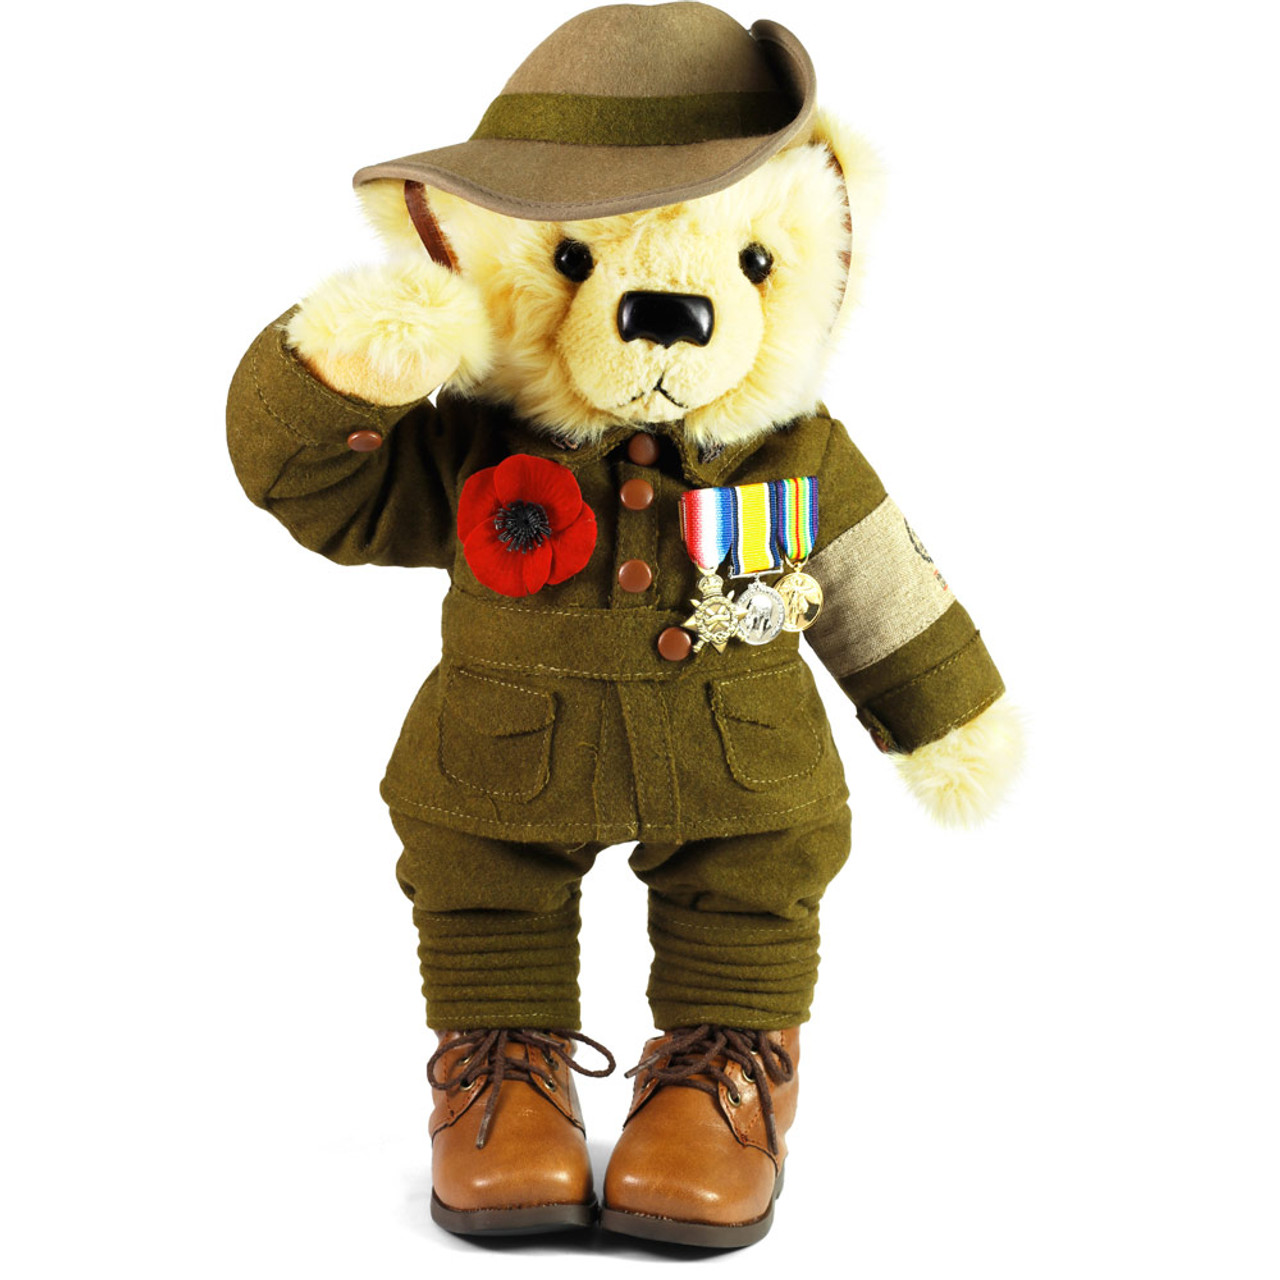 Armistice Centenary Ltd Edition Bear